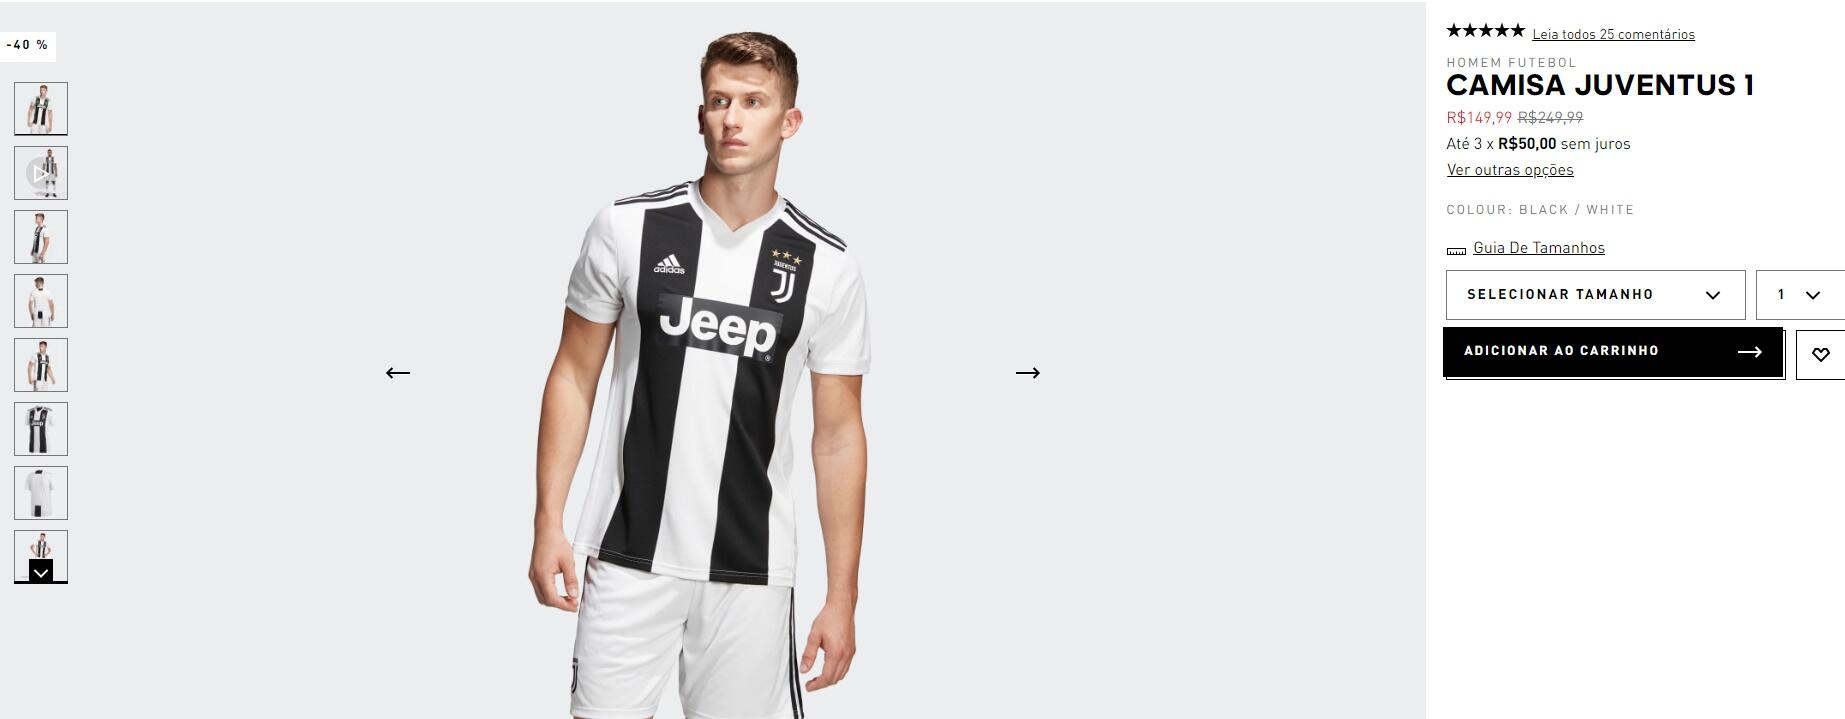 Camisa Juventus 1